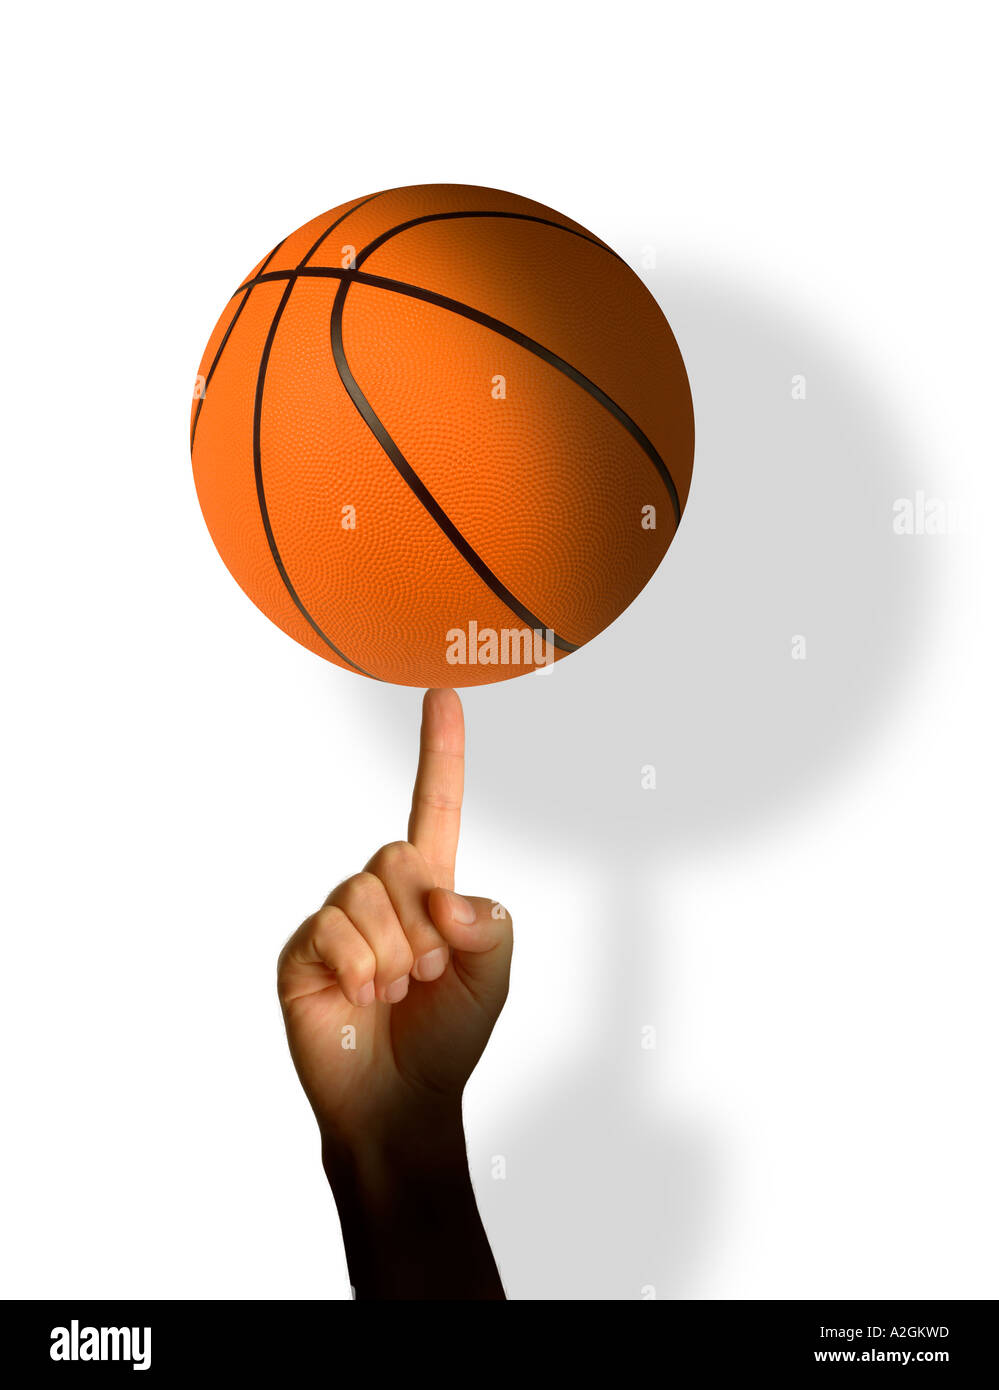 Basketball on the fingertip Stock Photo